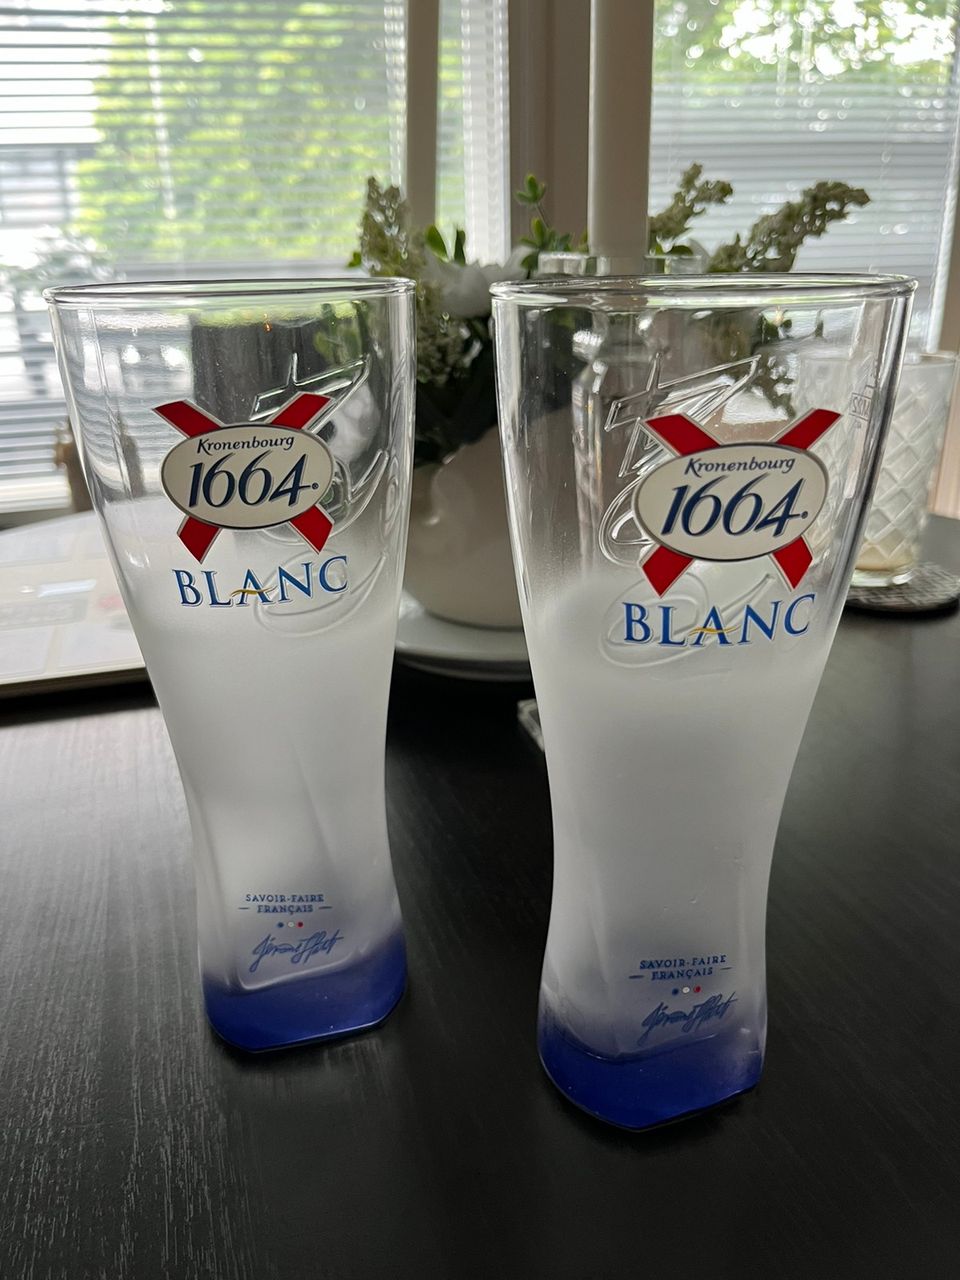 Kaksi Blanc olut tuoppia